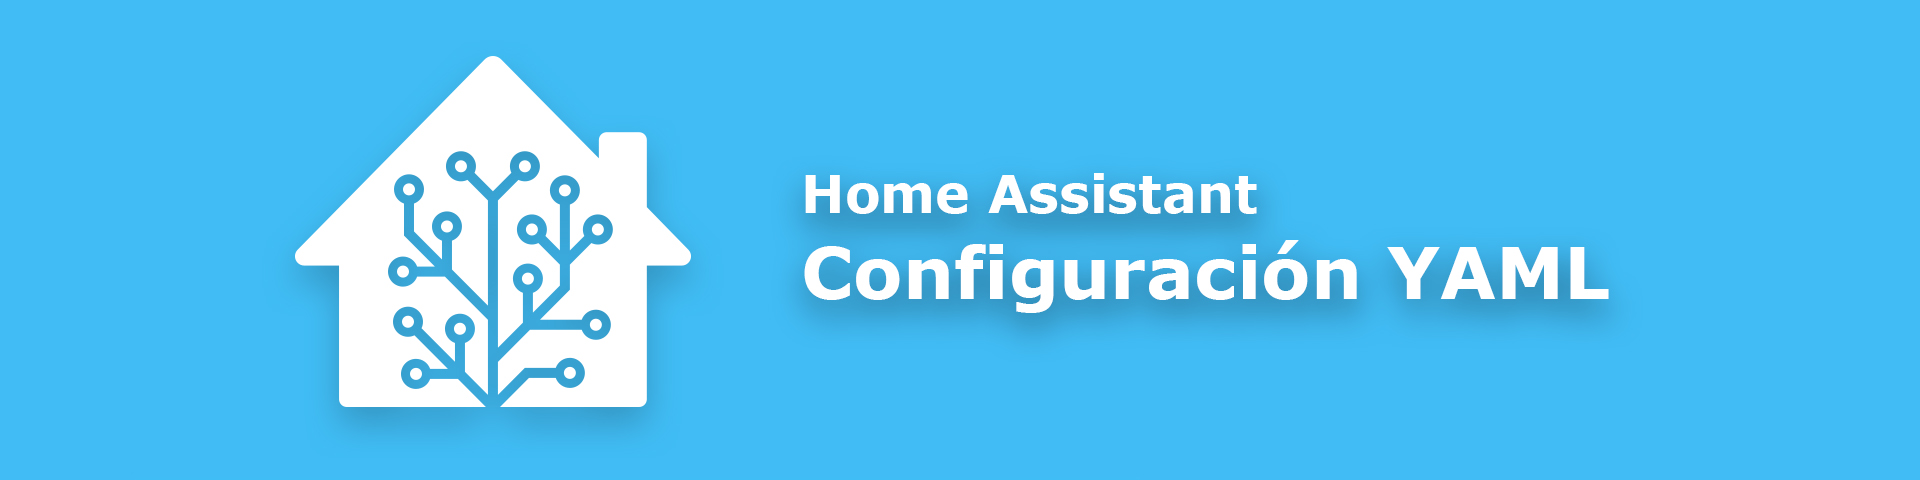 Configuración de Home Assistant en YAML